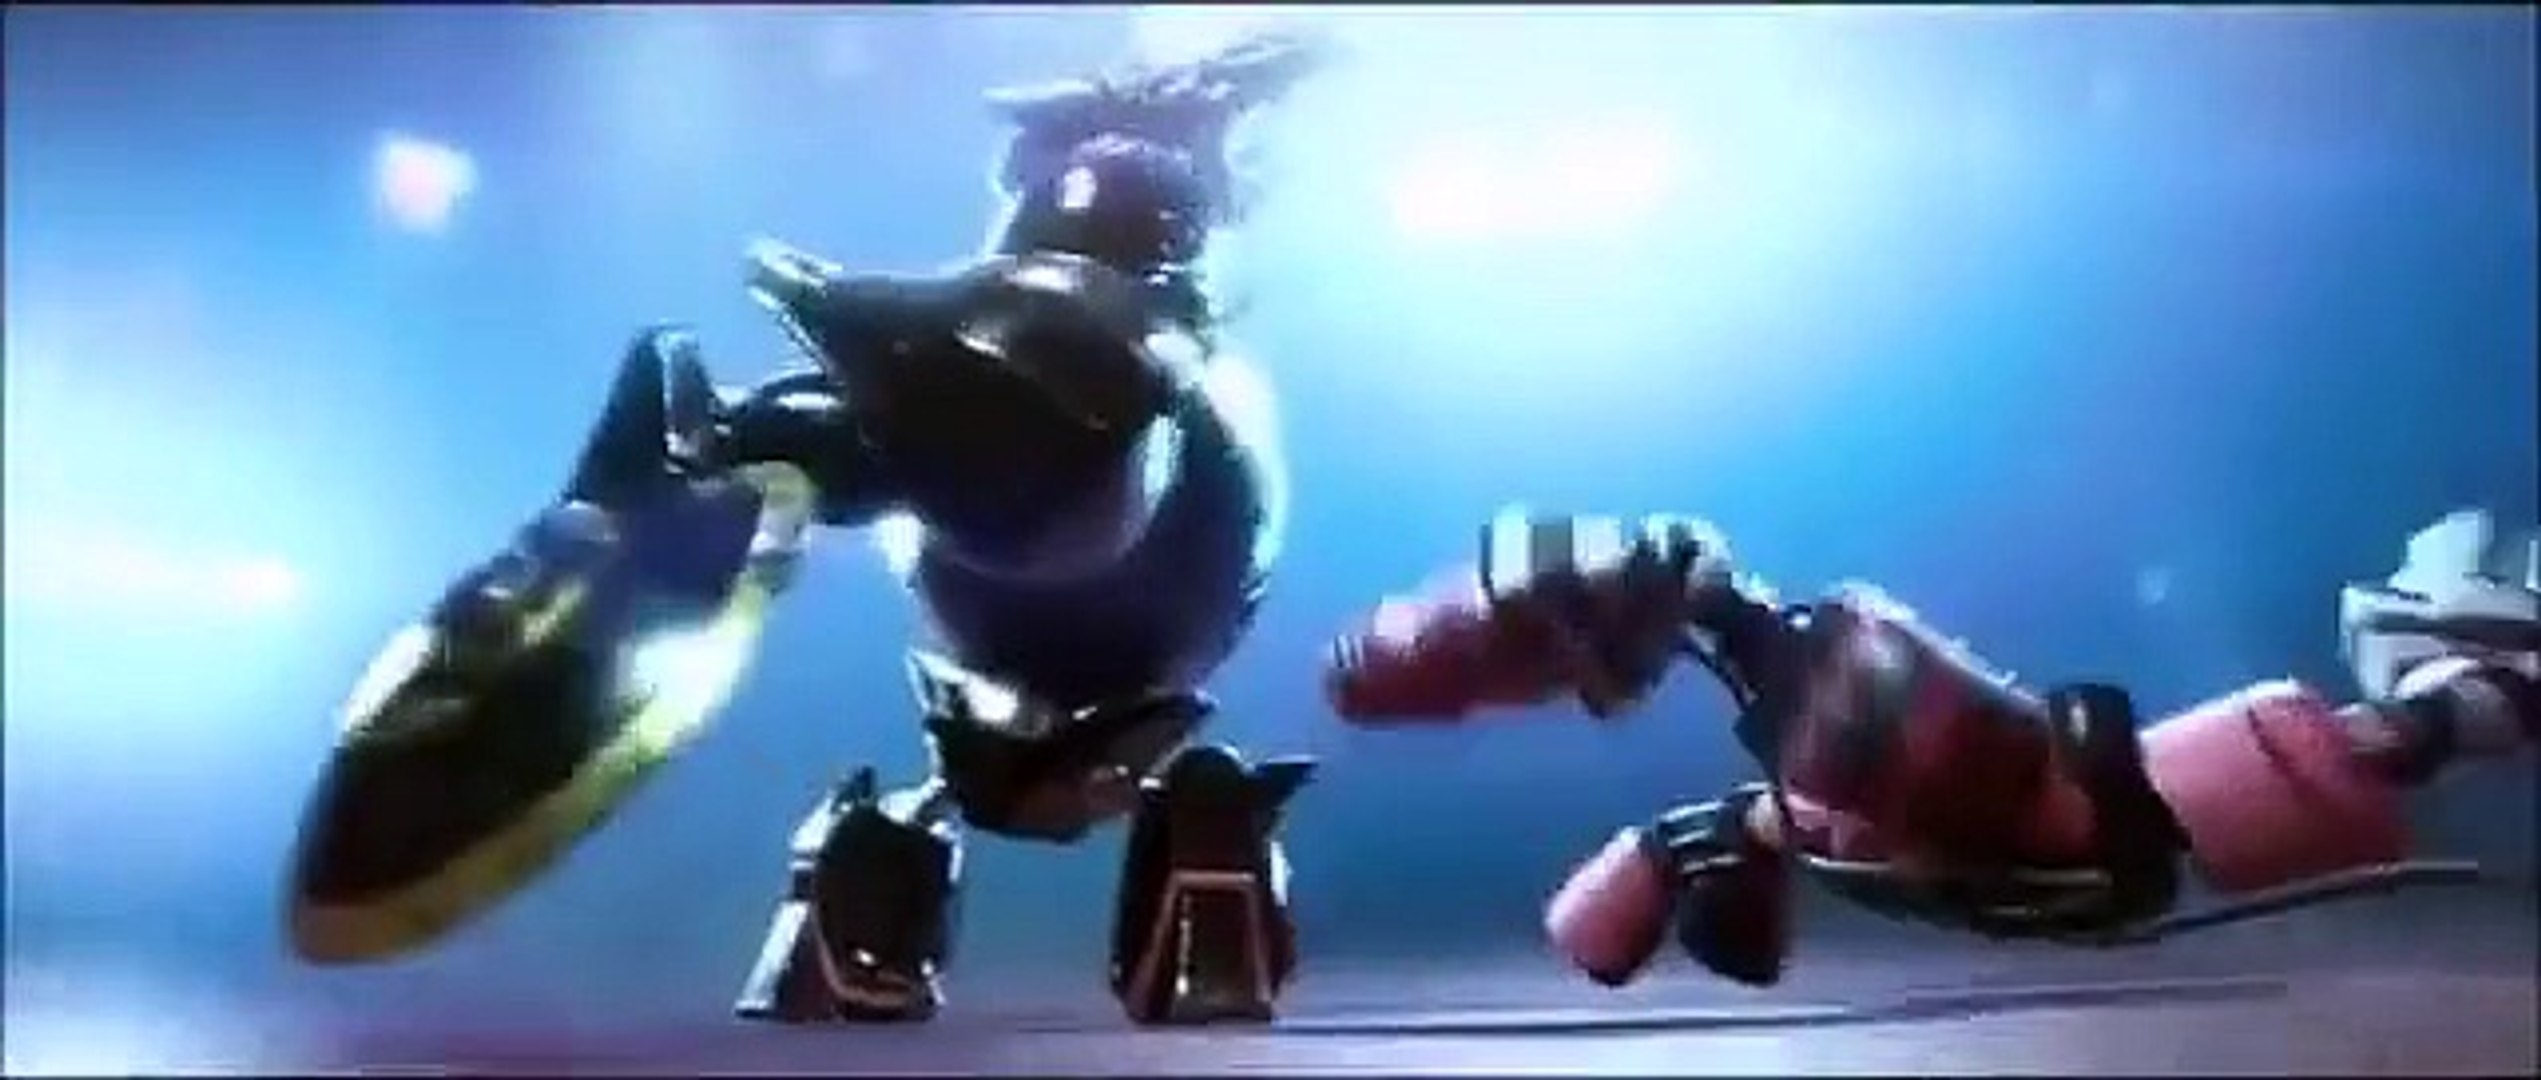 Sige Minimer En skønne dag Big Hero 6 "Hiro's Robot Fight" - High Quality (FULL SCENE) - video  Dailymotion